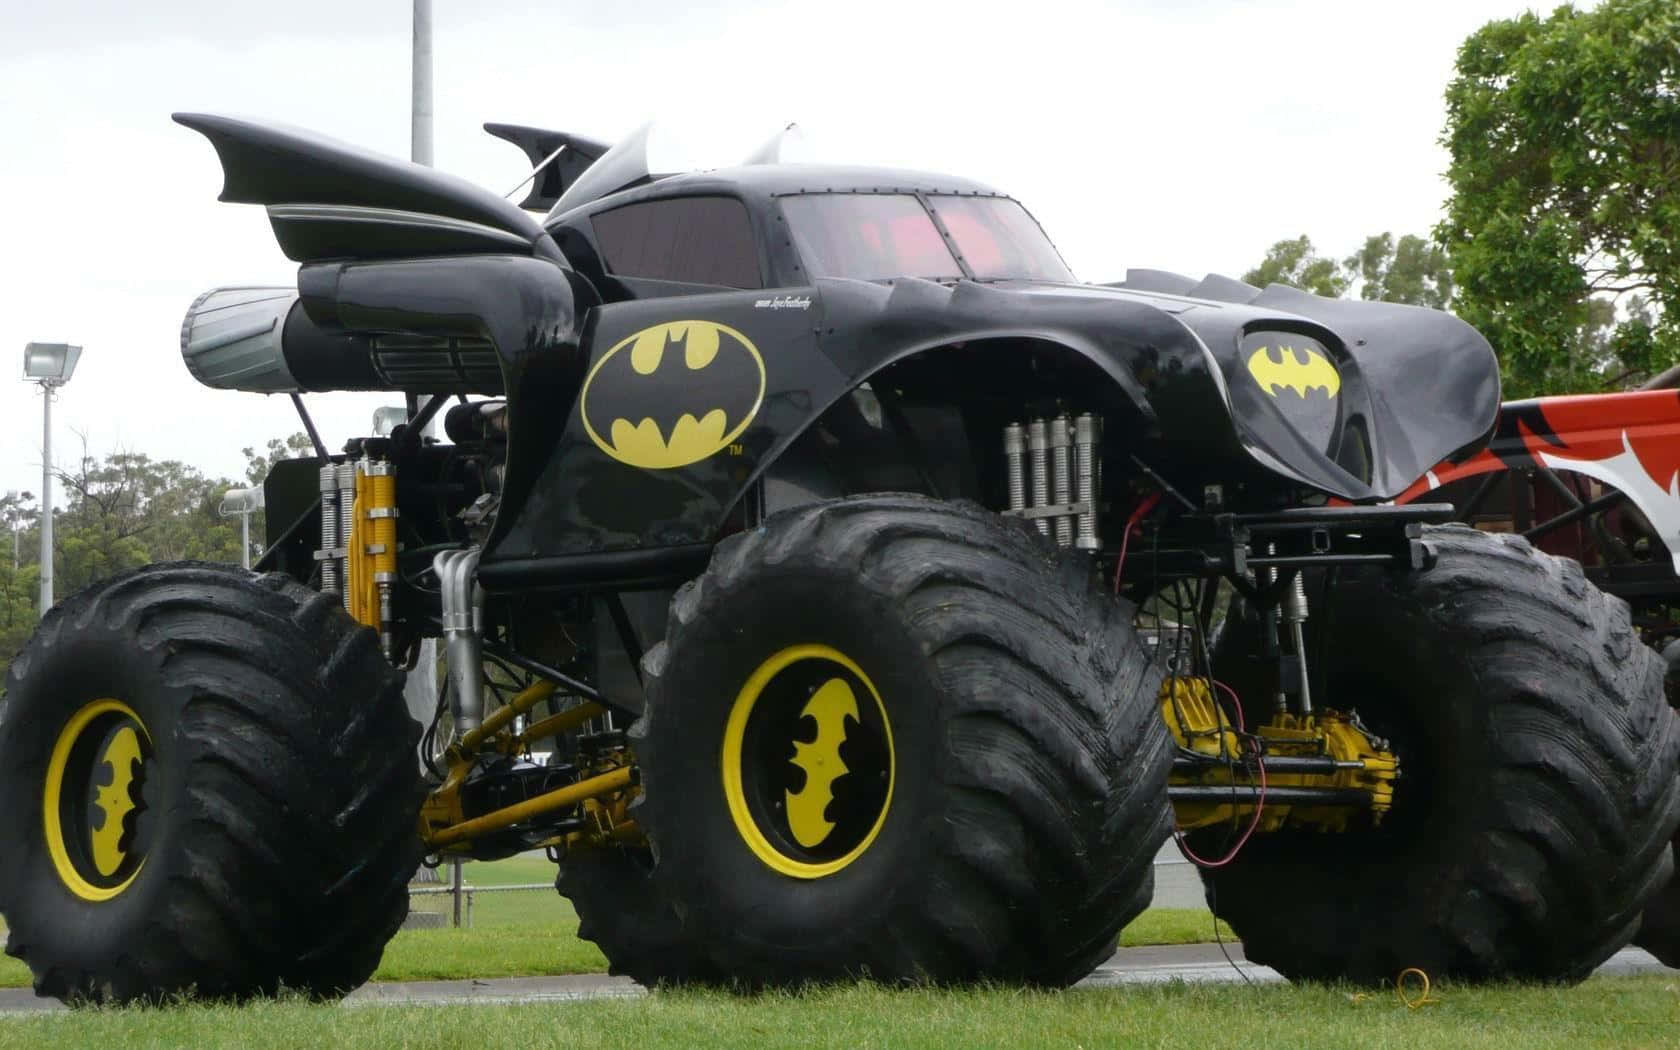 Batman Monster Truck - A Big Black Truck With Big Wheels